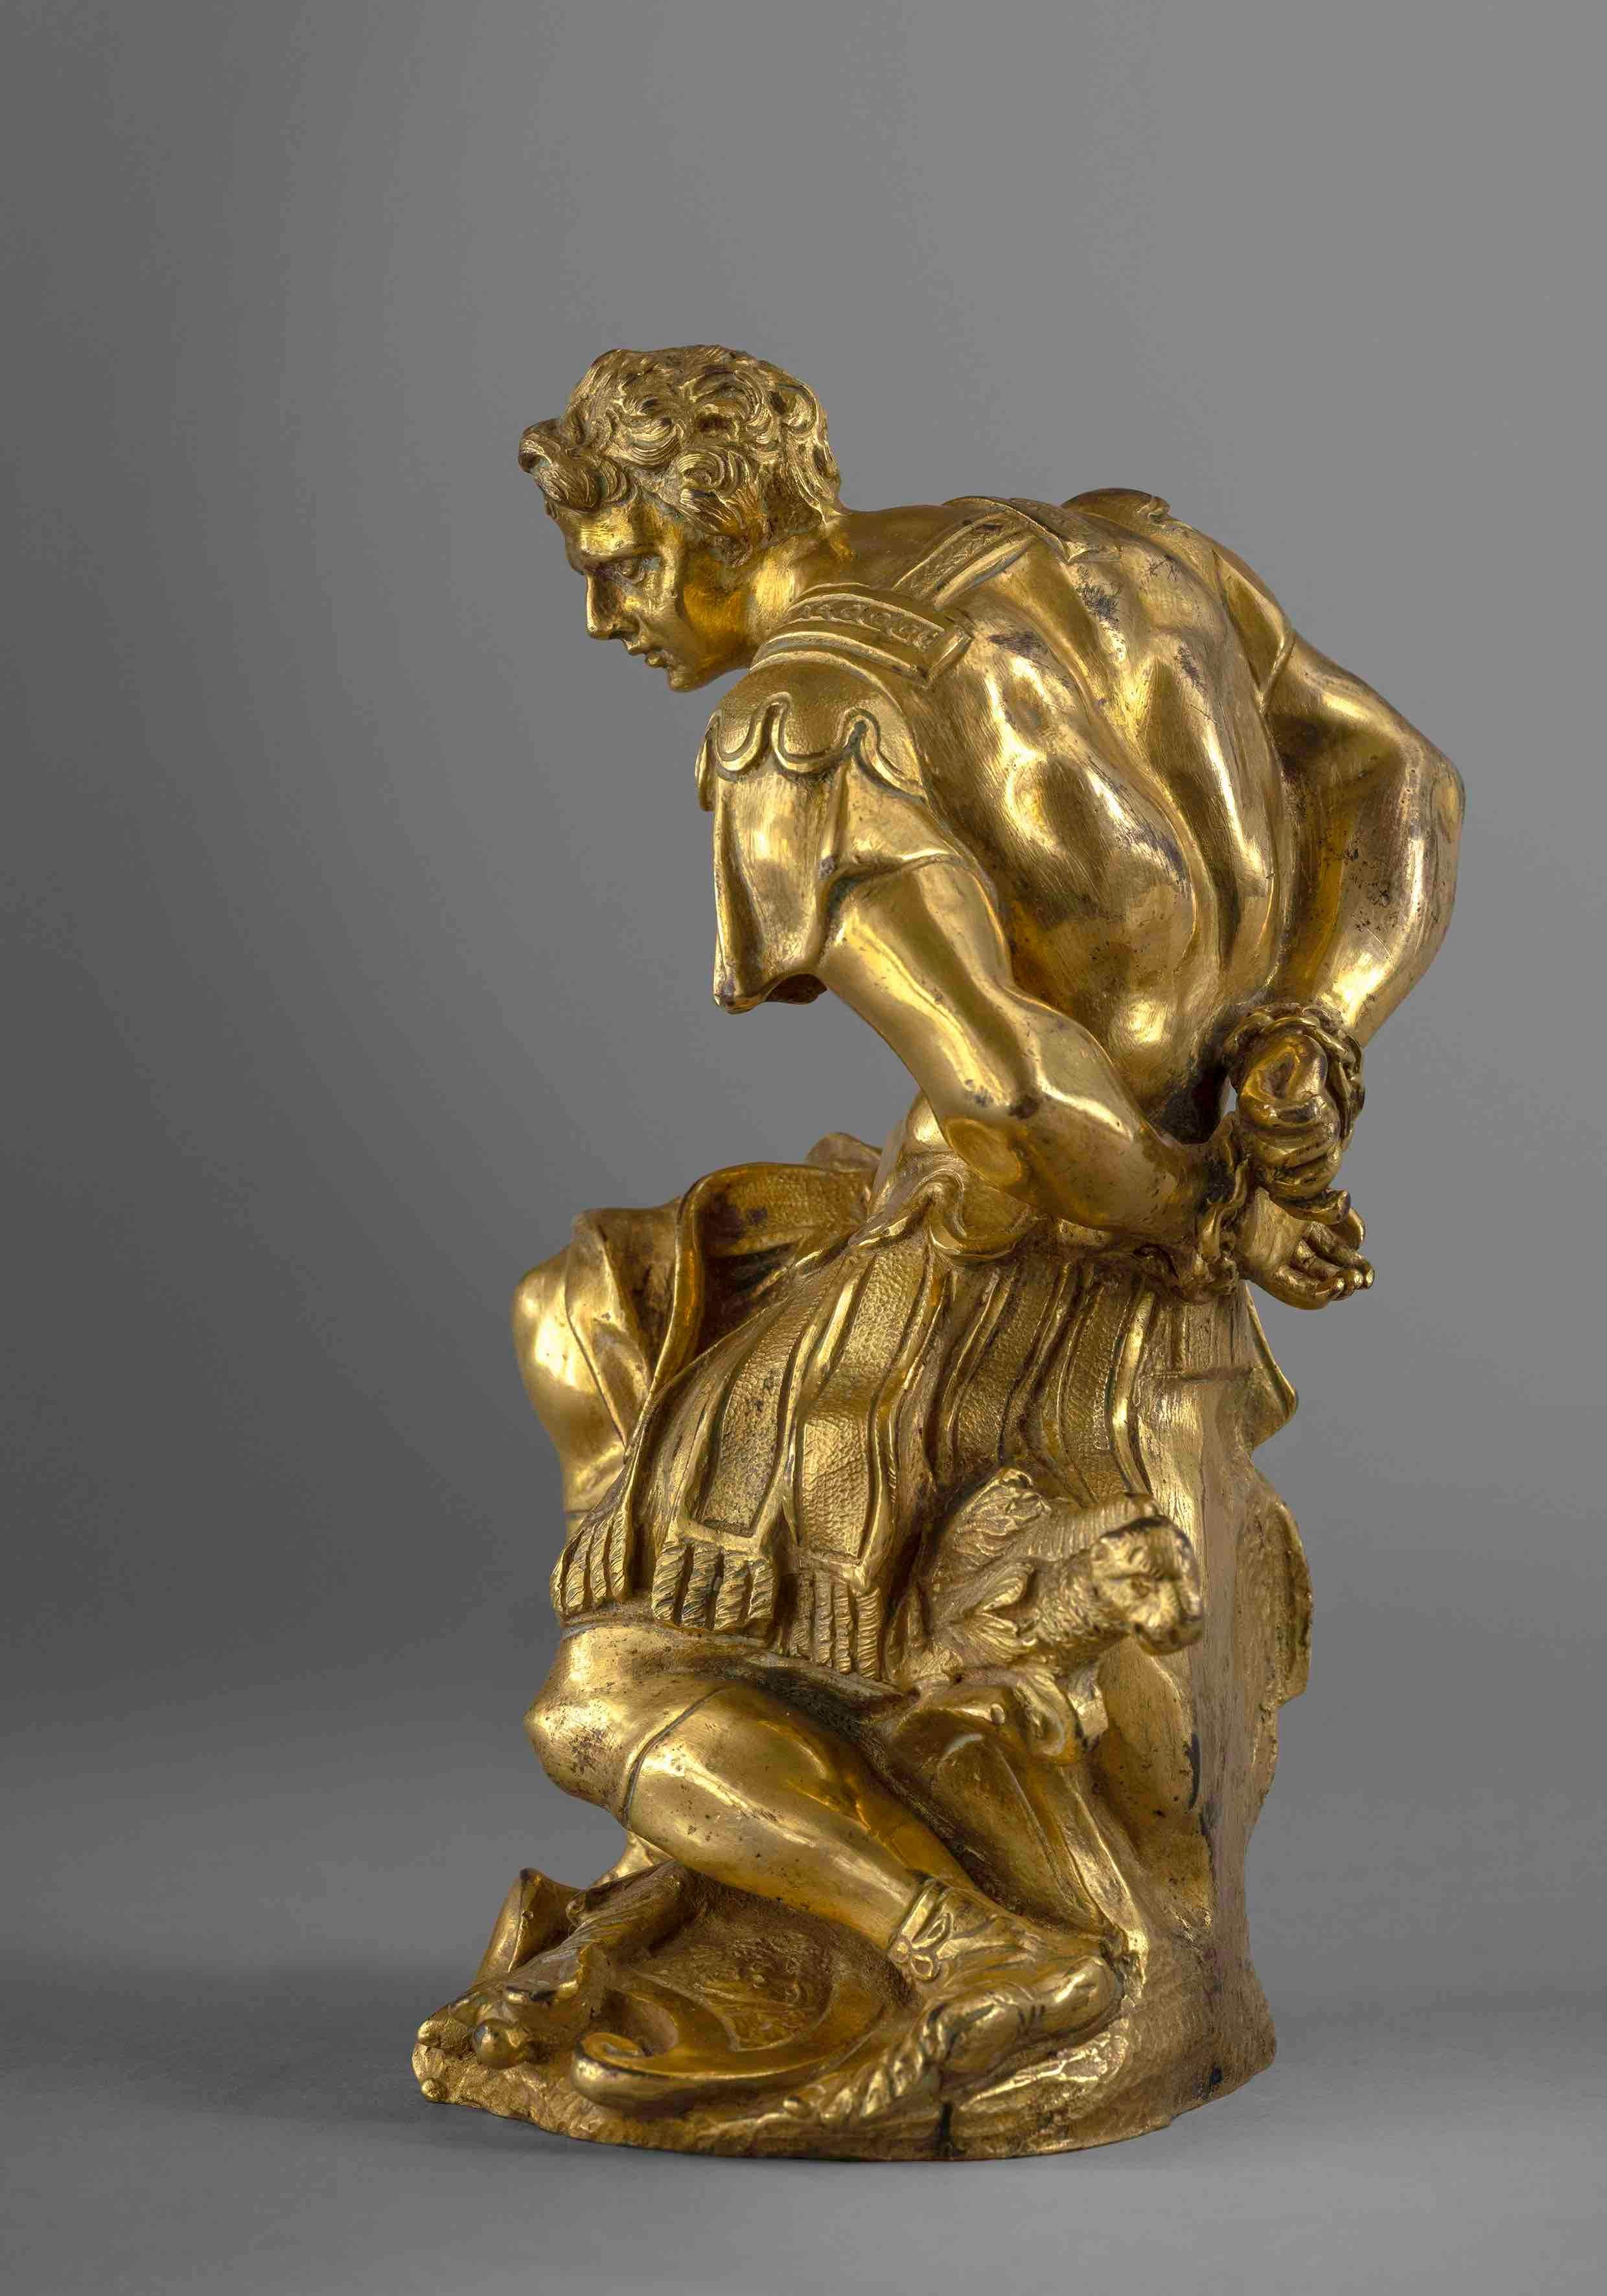 Ein gefangener Soldat

Vergoldete Bronze, Wachsausschmelzverfahren
Italien (Rom), 17. Jahrhundert
H 17 x DIAS 10 cm
H 6 2/3 x Dia 4 Zoll

Das 17. Jahrhundert erlebte eine Blüte der künstlerischen Ausdrucksformen in ganz Europa, insbesondere in Rom,